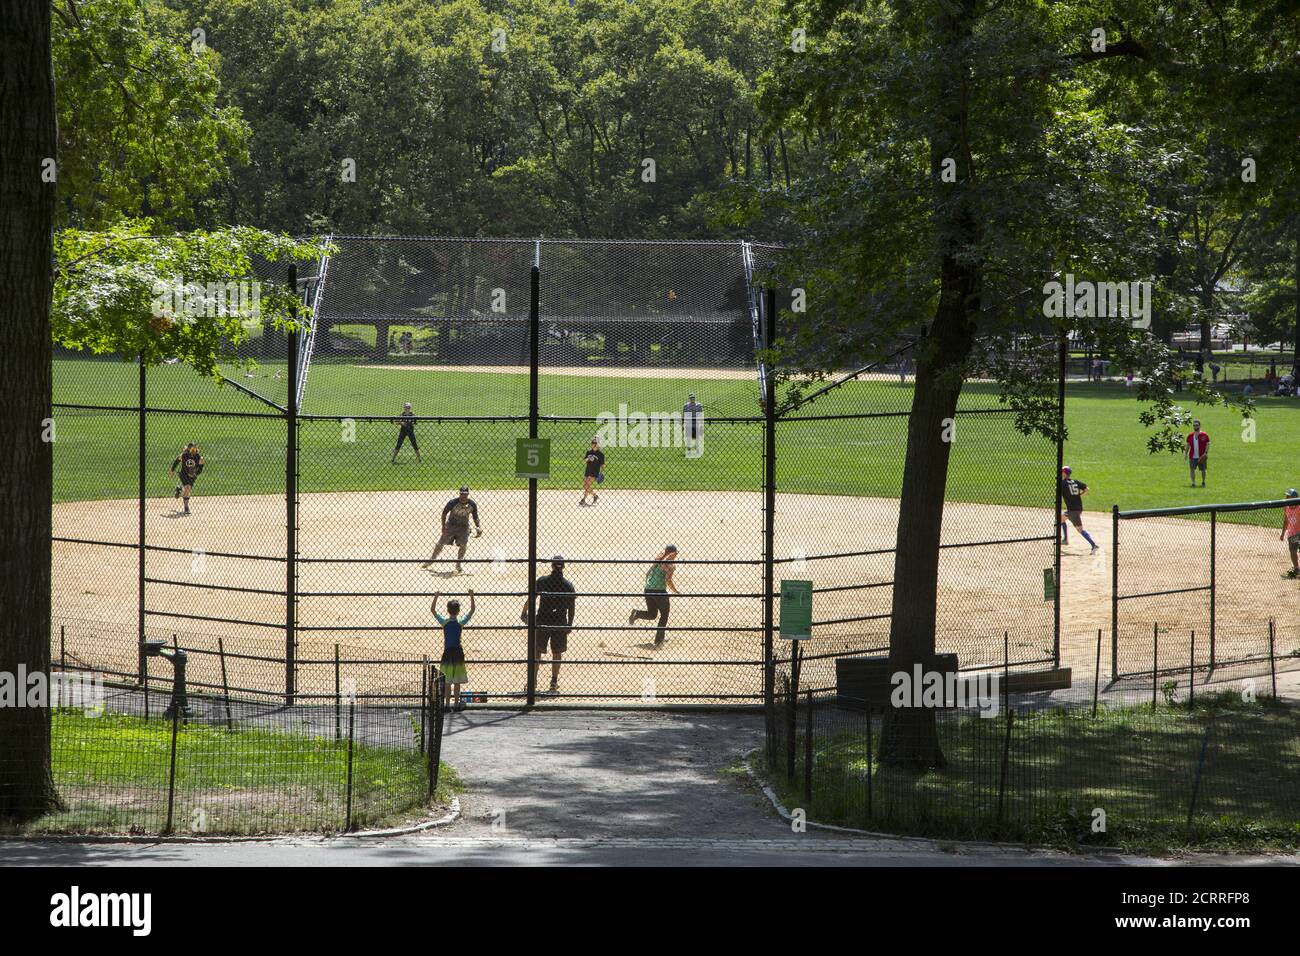 Softball Baseball-Spiel im Central Park, NYC während der Covid-19 Pandemie. Baseball hat natürliche soziale Distanzierung in das Spiel eingebaut, wo die Spieler auf dem Feld verteilt sind. Stockfoto